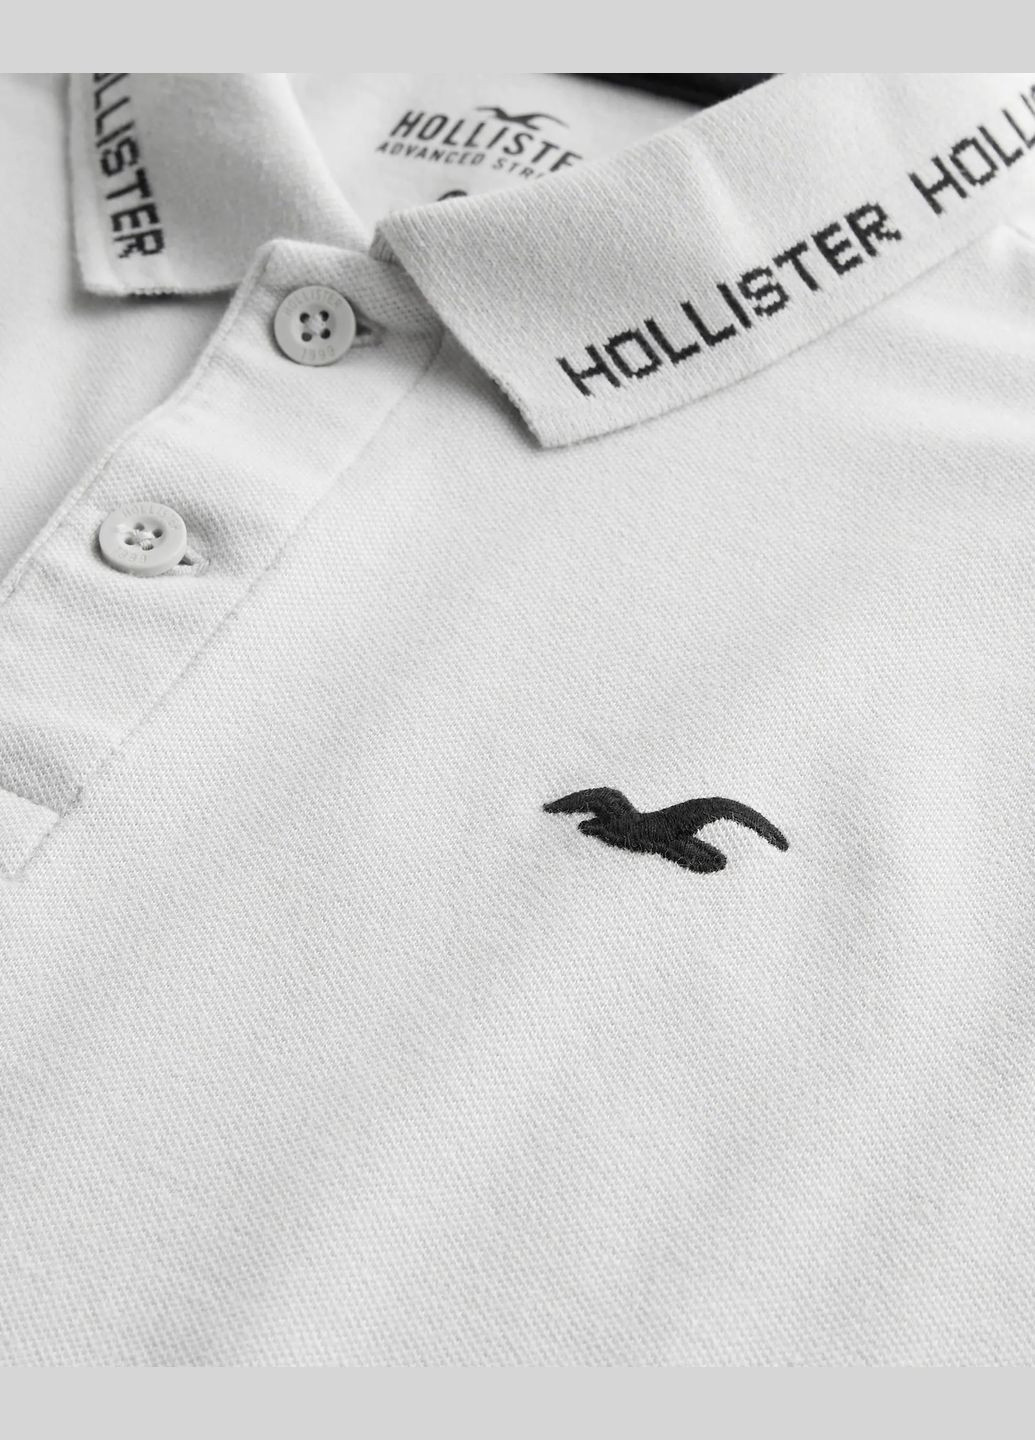 Светло-серая футболка-поло мужское - поло hc9560m для мужчин Hollister